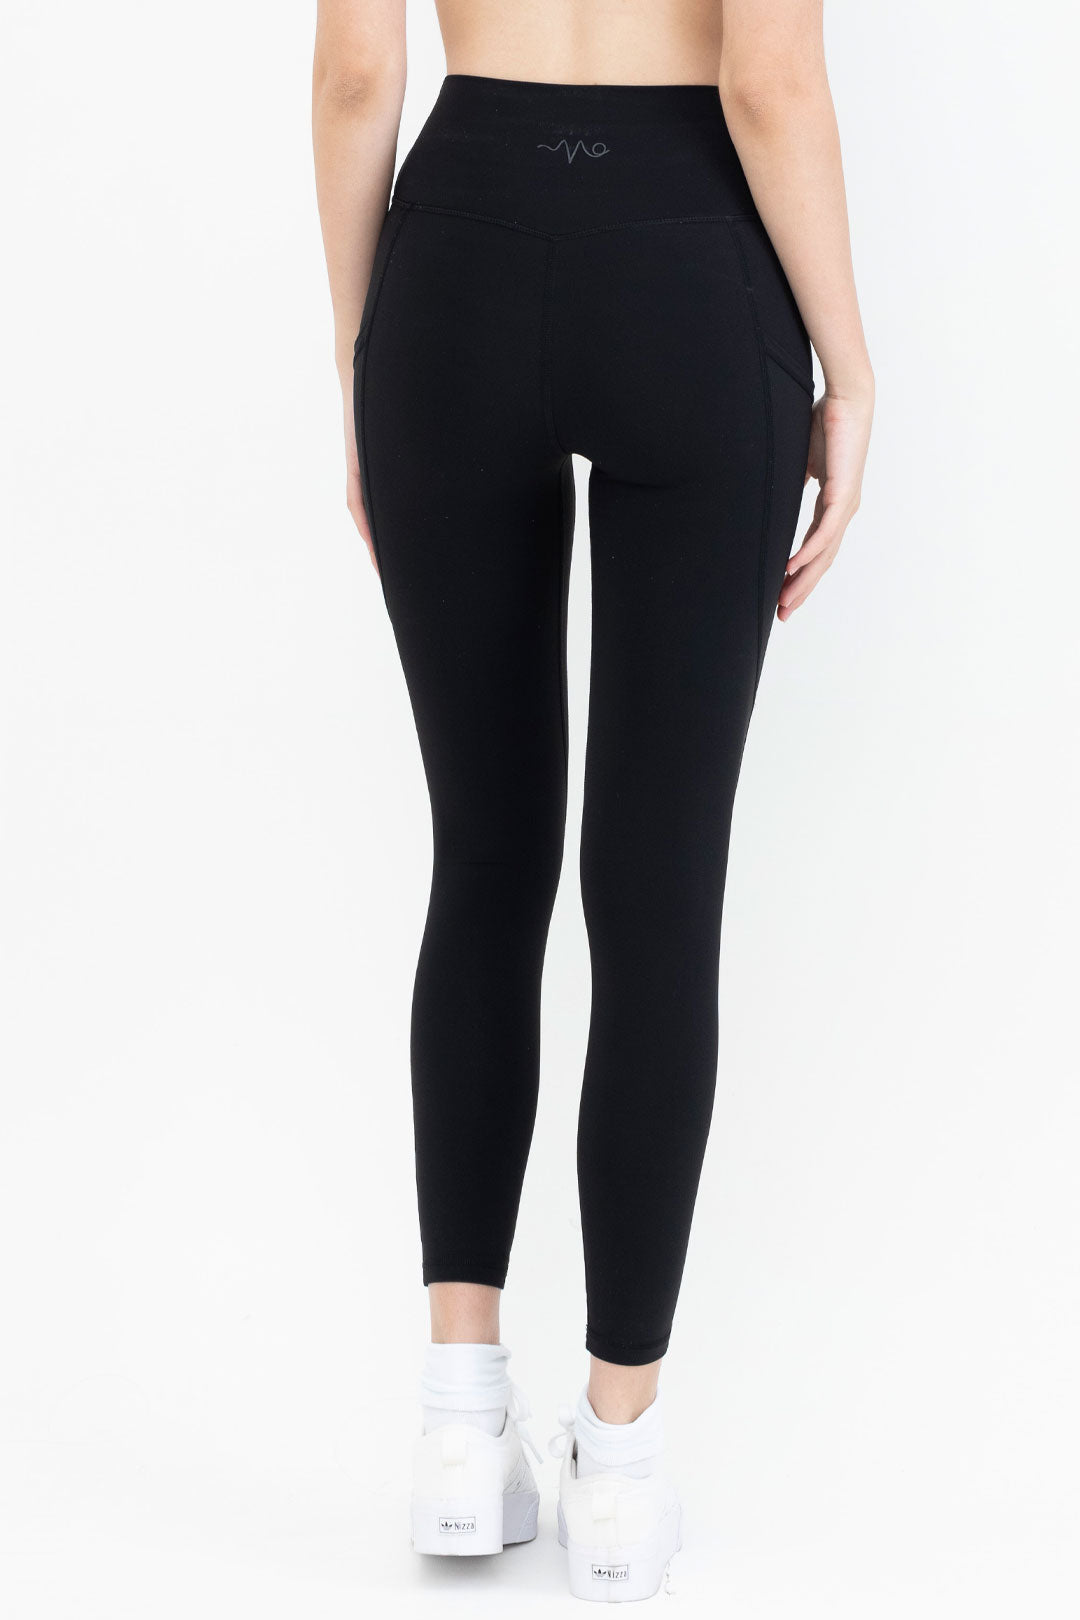 Buy Grey Full Length Leggings from the Next UK online shop